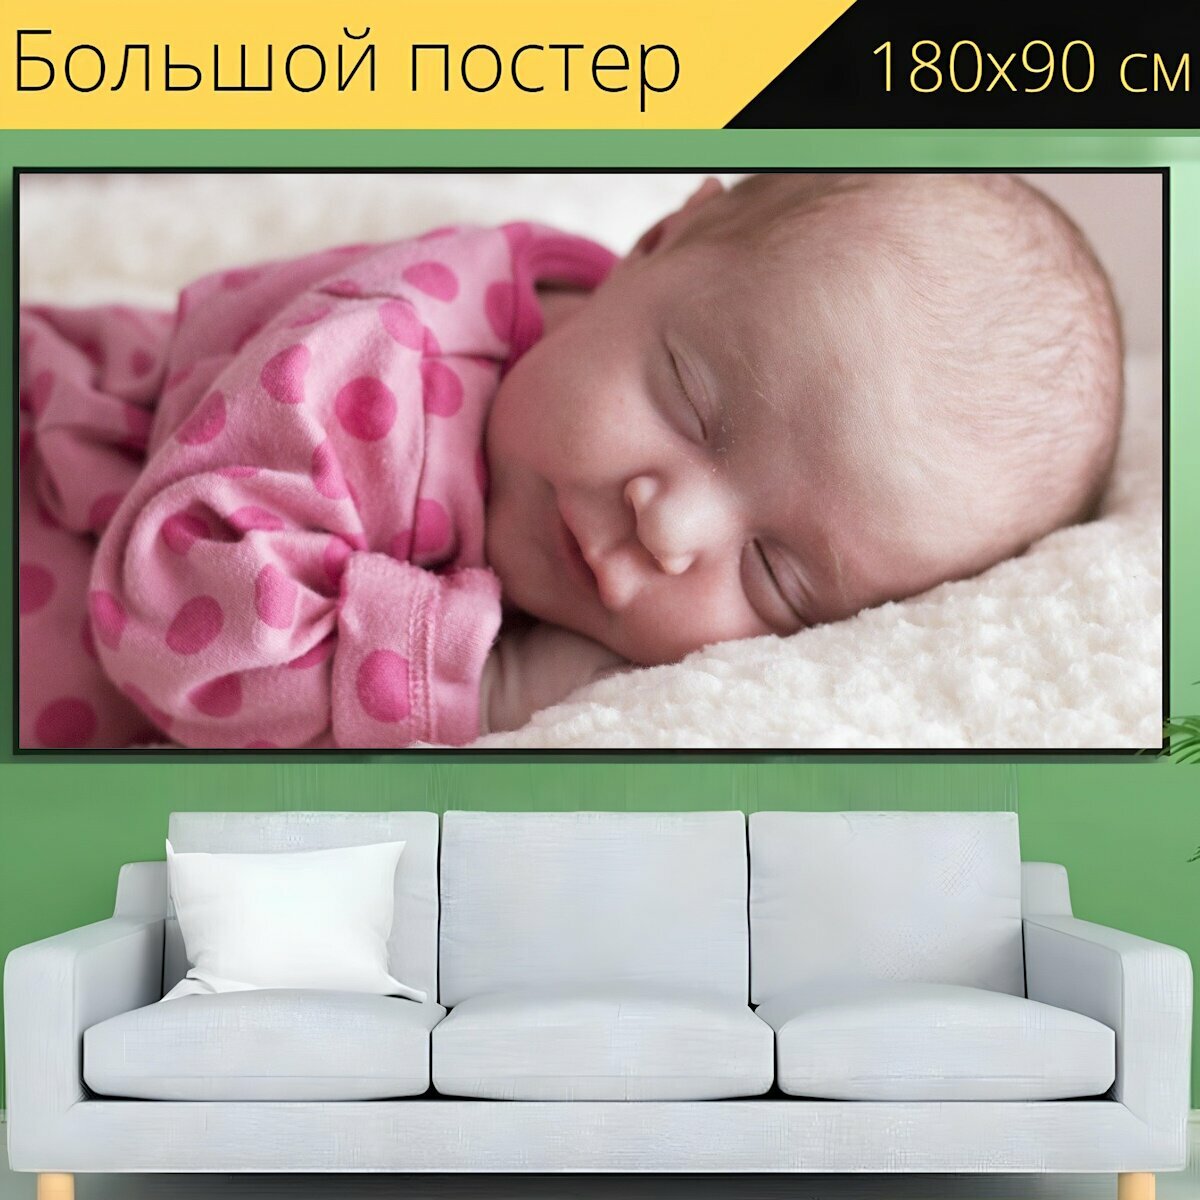 Большой постер "Детка, новорожденный, спать" 180 x 90 см. для интерьера